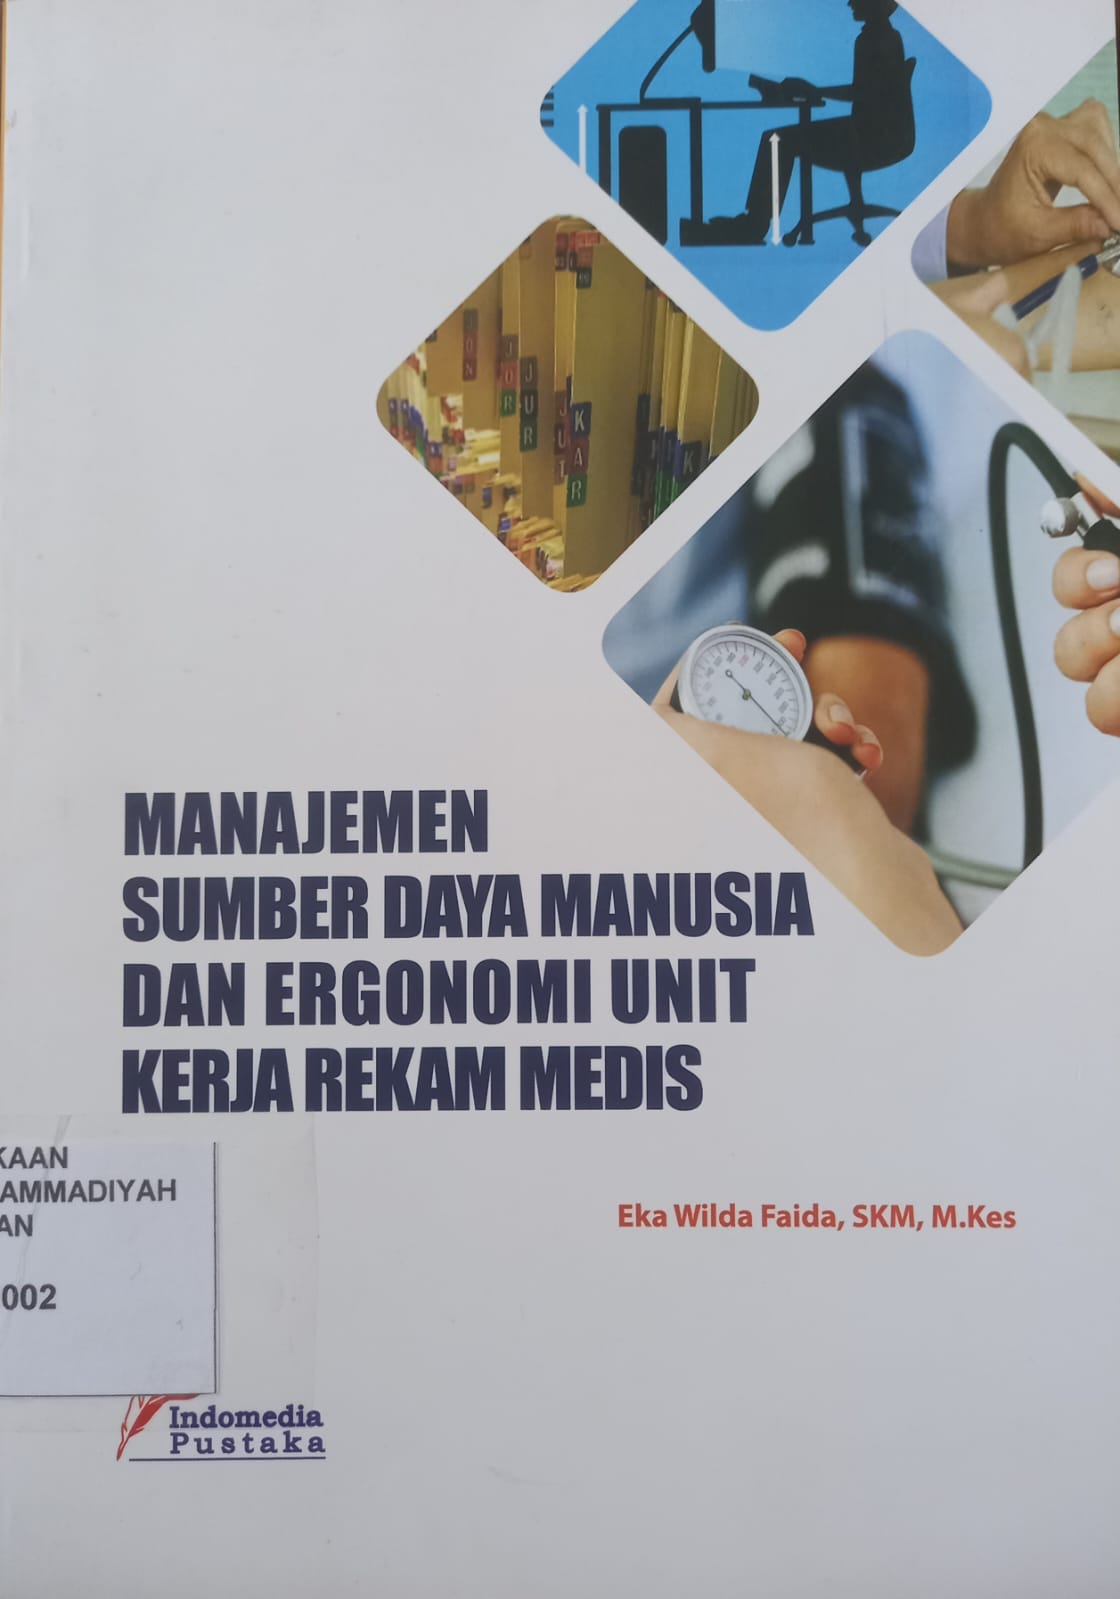 Manajemen sumber daya manusia dan ergonomi unit kerja rekam medis